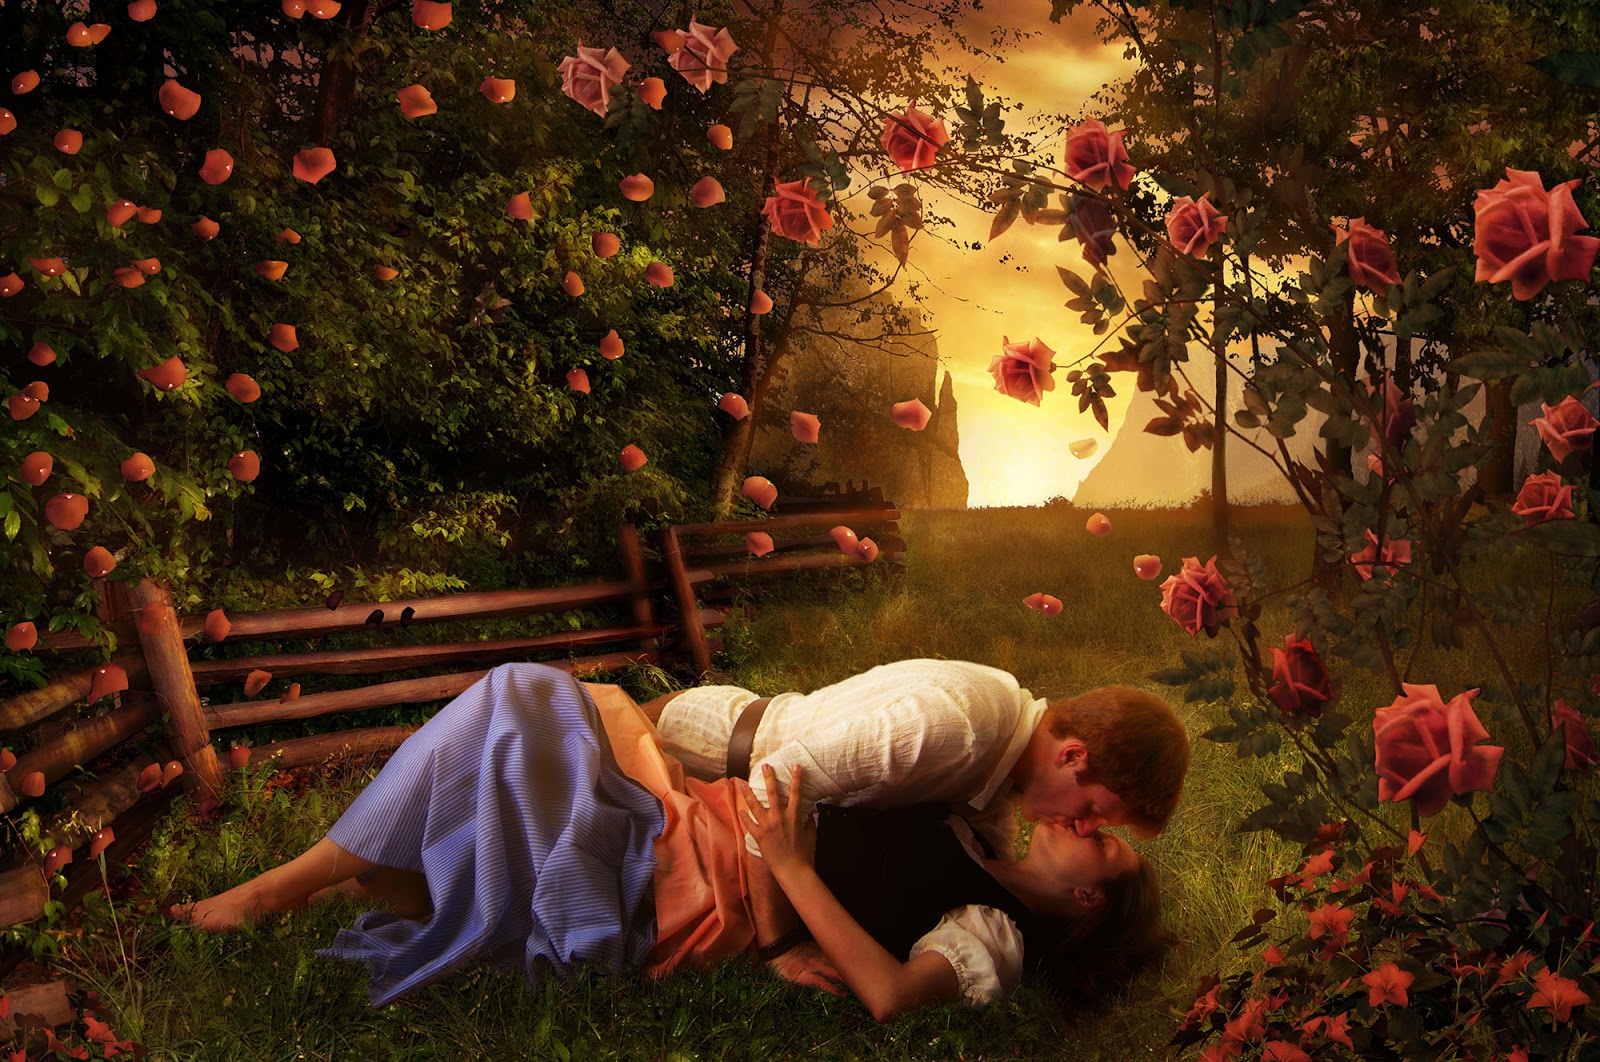 48 Download Romantic Kissing Wallpapers On WallpaperSafari